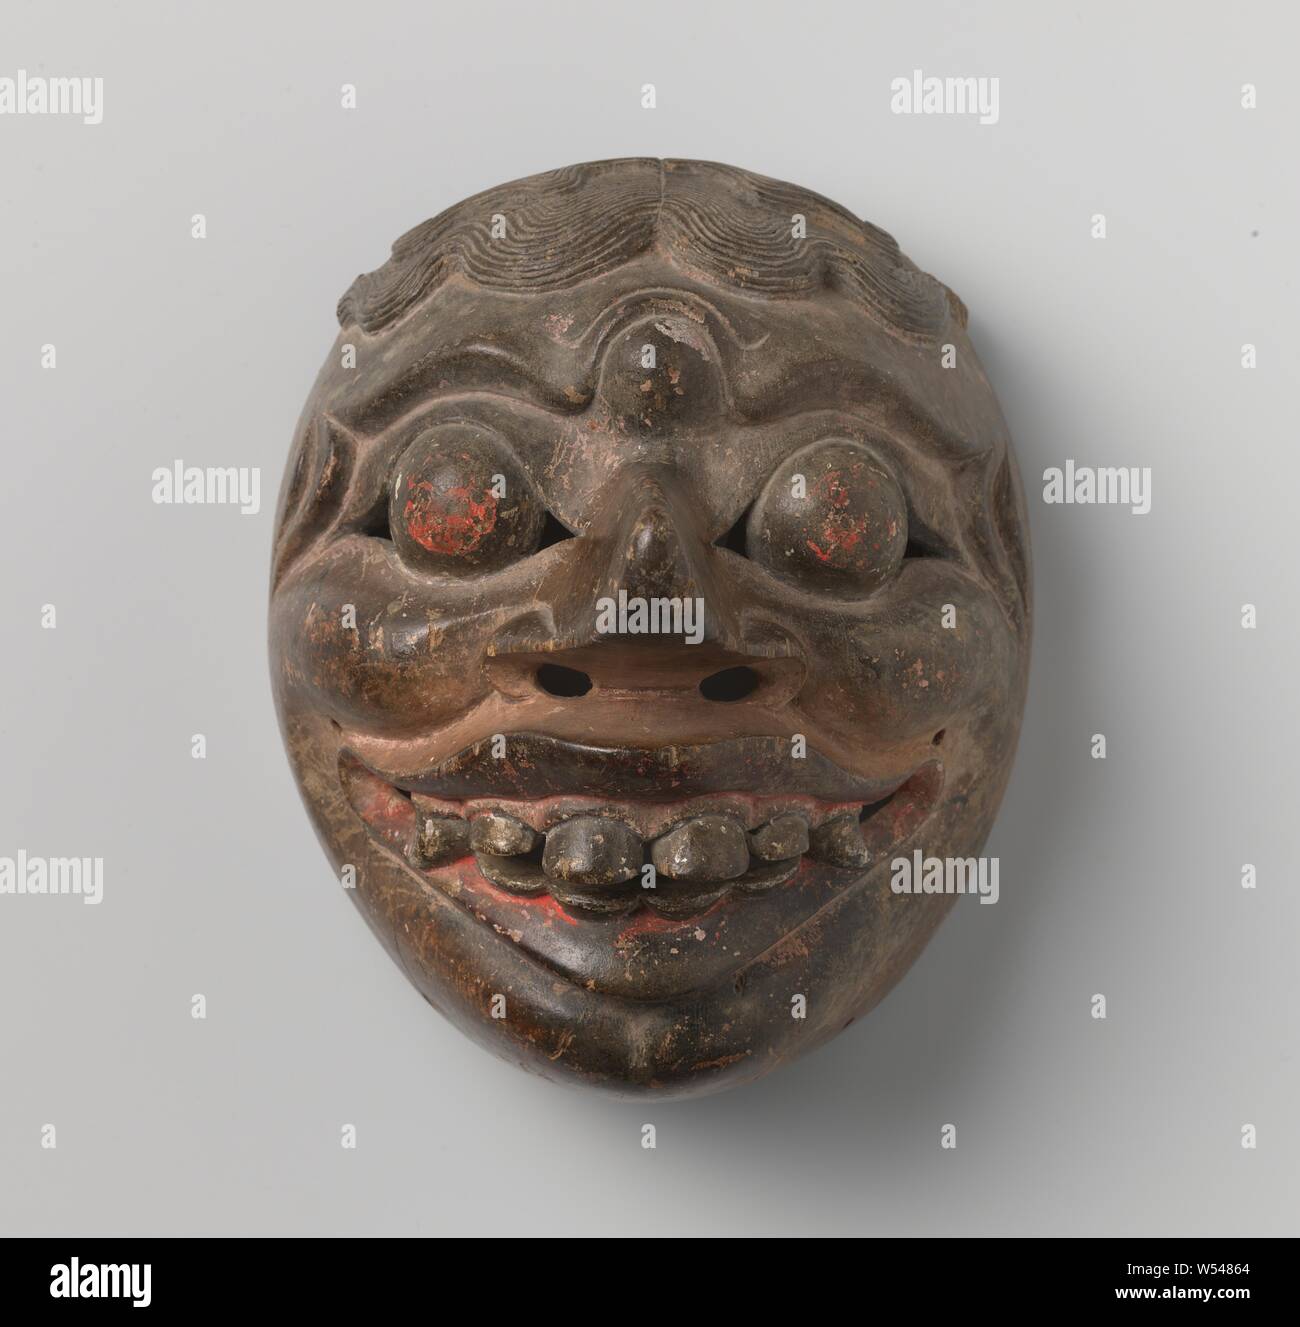 Mask from Ombakarna, Mask from Ombakarna., Java, 1800 - 1900, wood (plant material), dye, h 18 cm × w 15 cm × d 16.5 cm Stock Photo